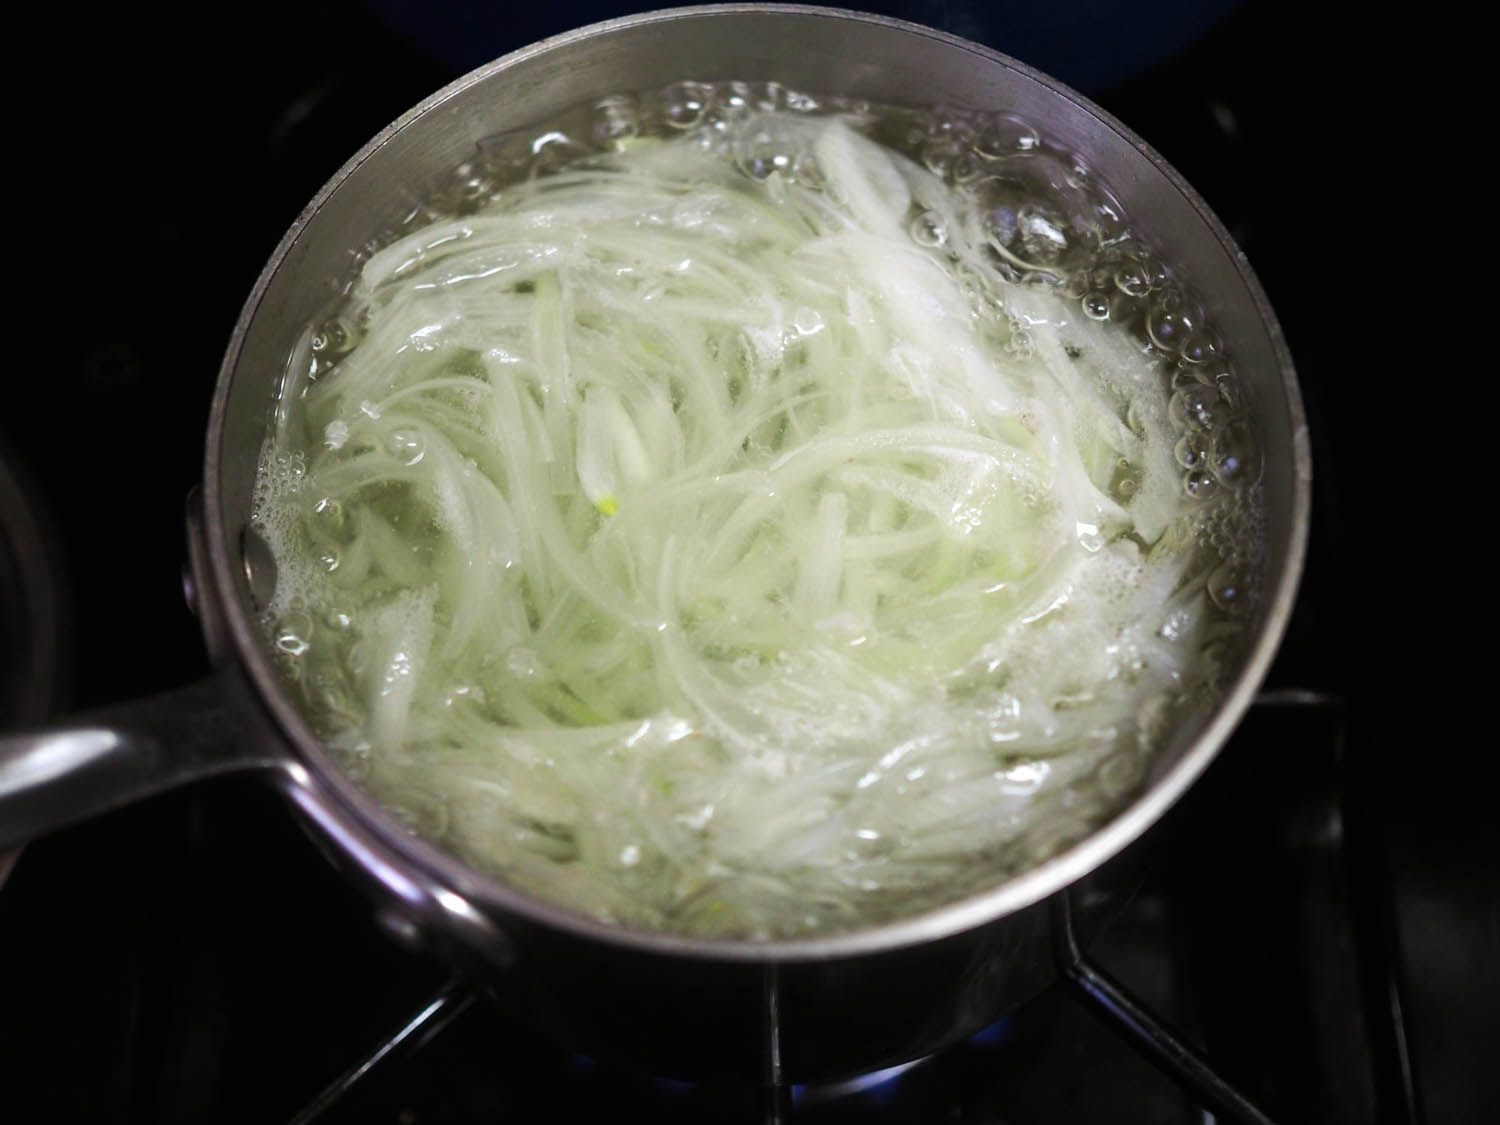 切洋葱变白的盐水测试soubise制备方法之一。